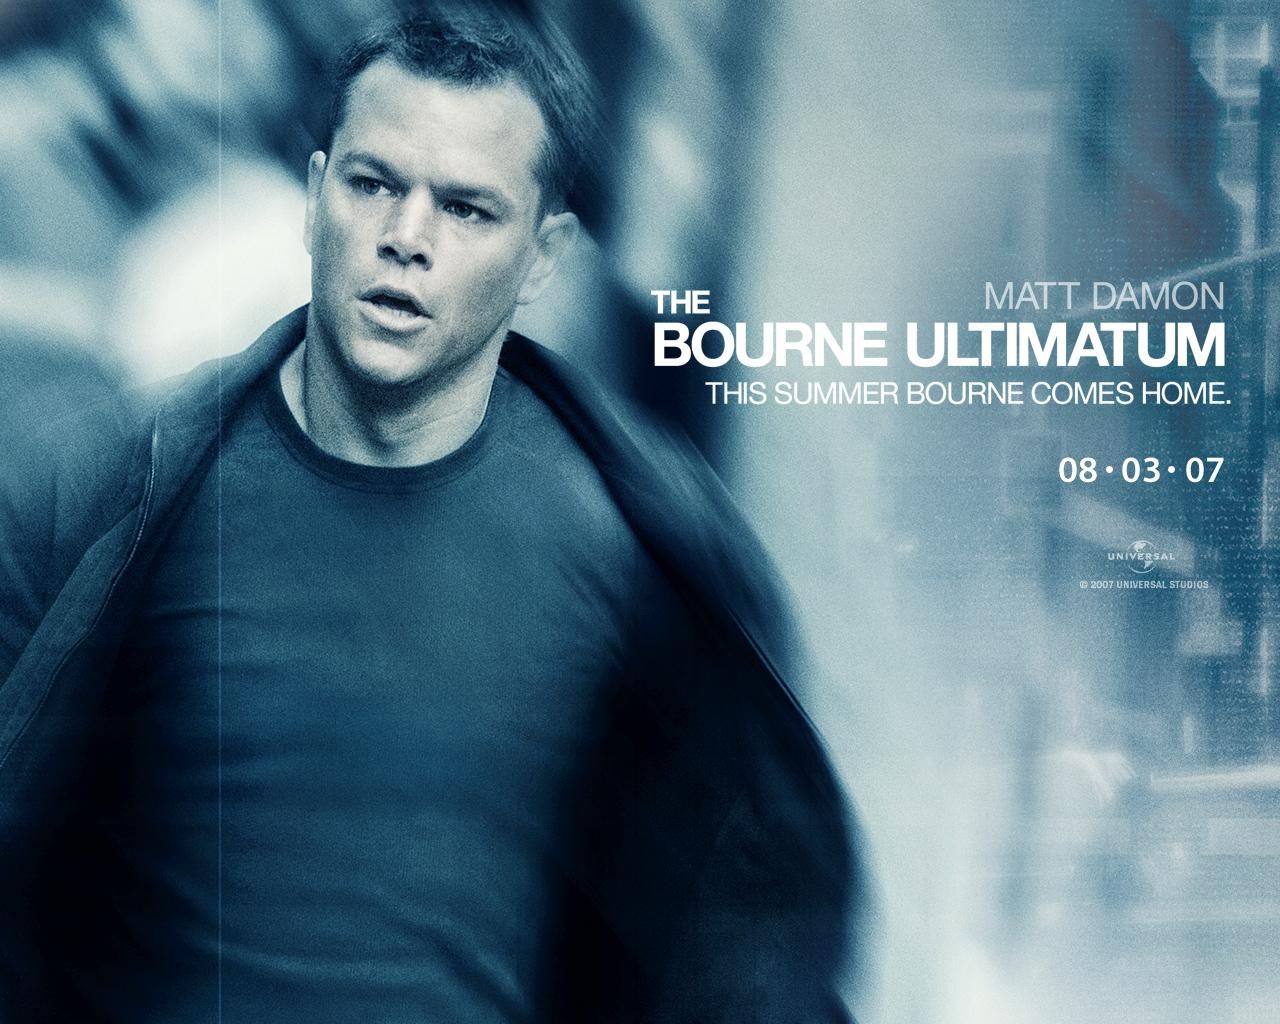 Фильм Ультиматум Борна | Bourne Ultimatum - лучшие обои для рабочего стола